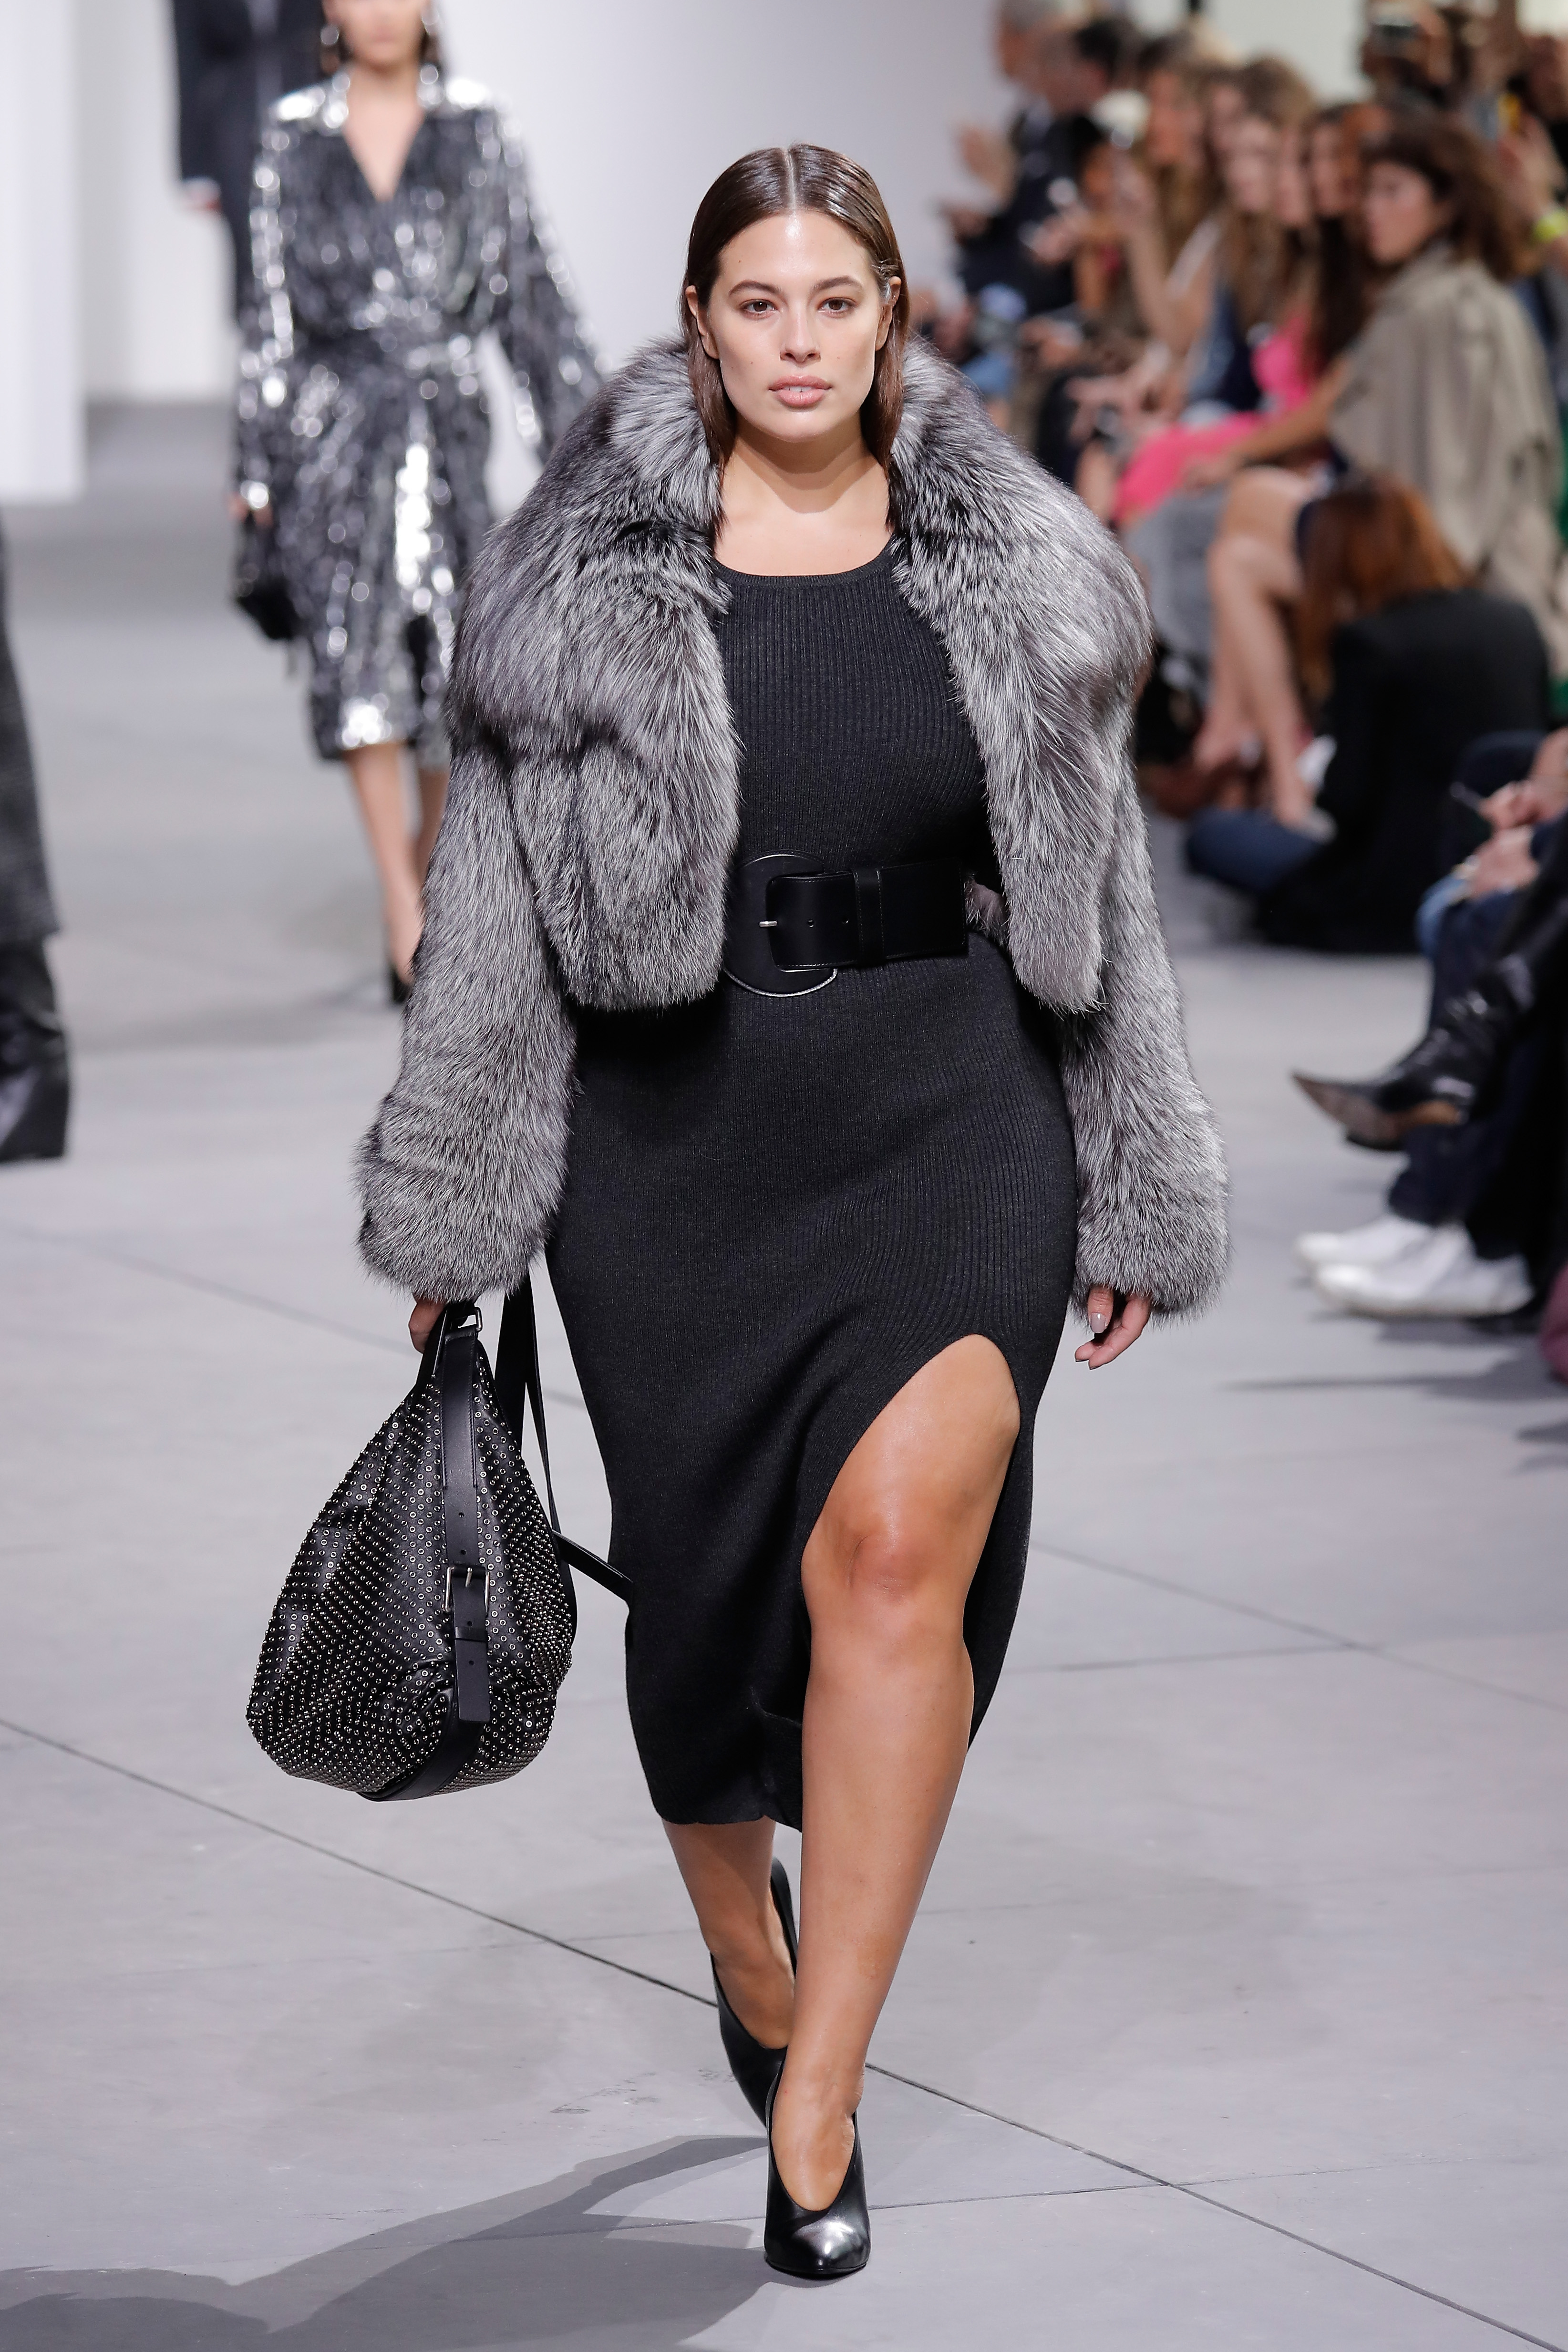 За представянето на колекцията си есен-зима на Седмицата на модата в Ню Йорк дизайнерът Майкъл Корс нае plus-size модела Ашли Греъм, която носи дрехи 54 размер. Тя се появи с черна рокля с цепка до коляното, допълнена с широк черен колан. Пищната манекенка има повече от 3 милиона последователи в социалната мрежа Instagram.